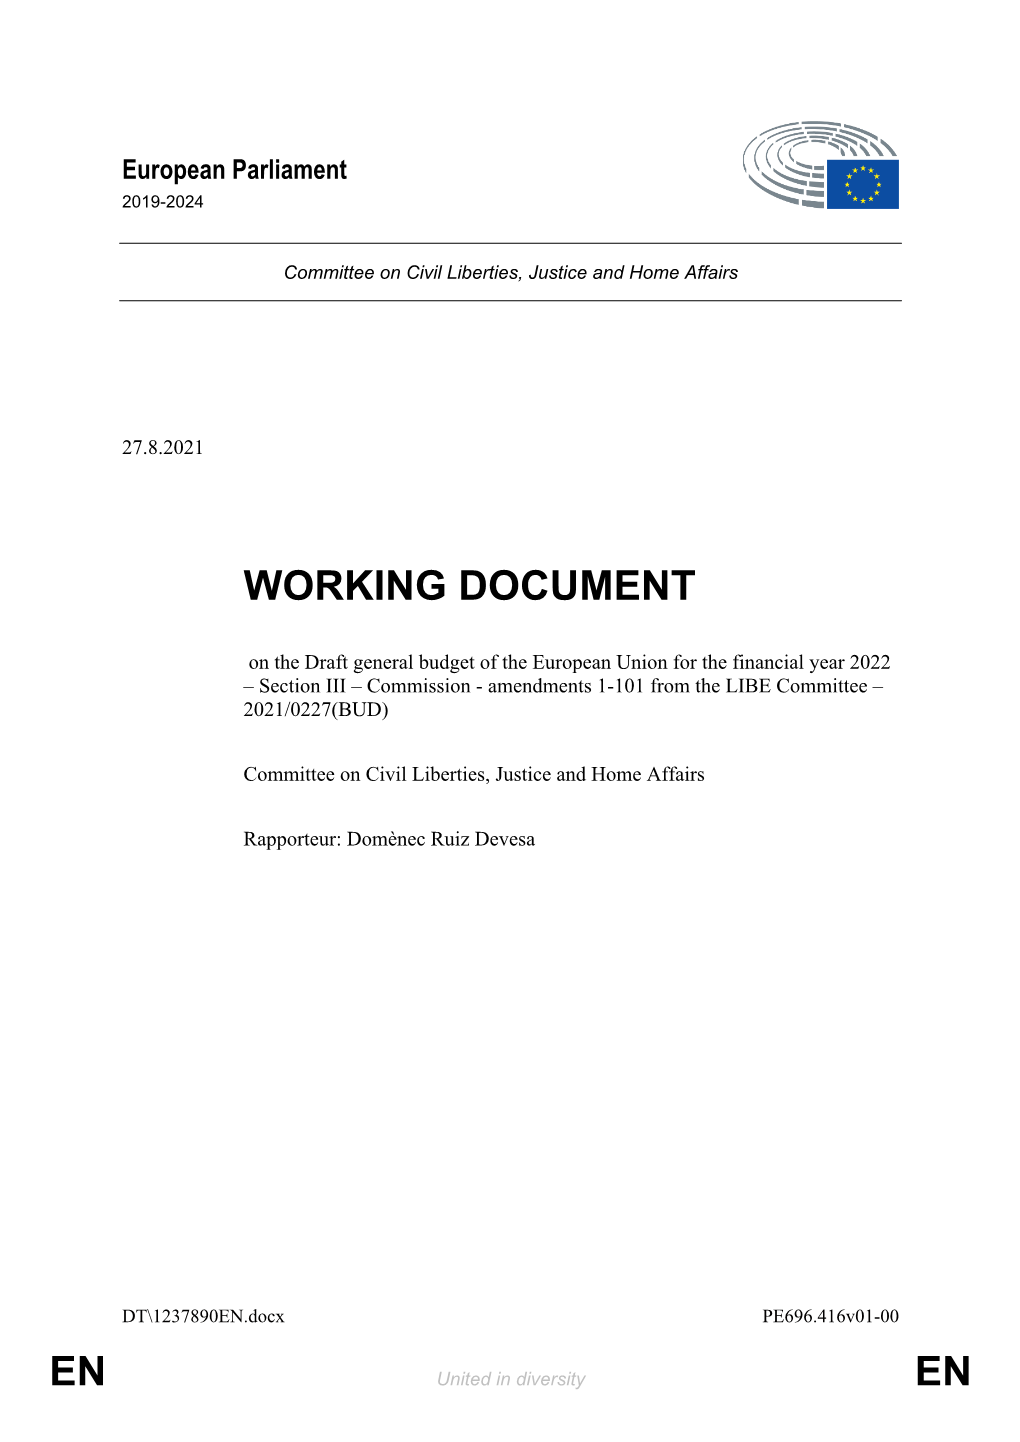 En En Working Document